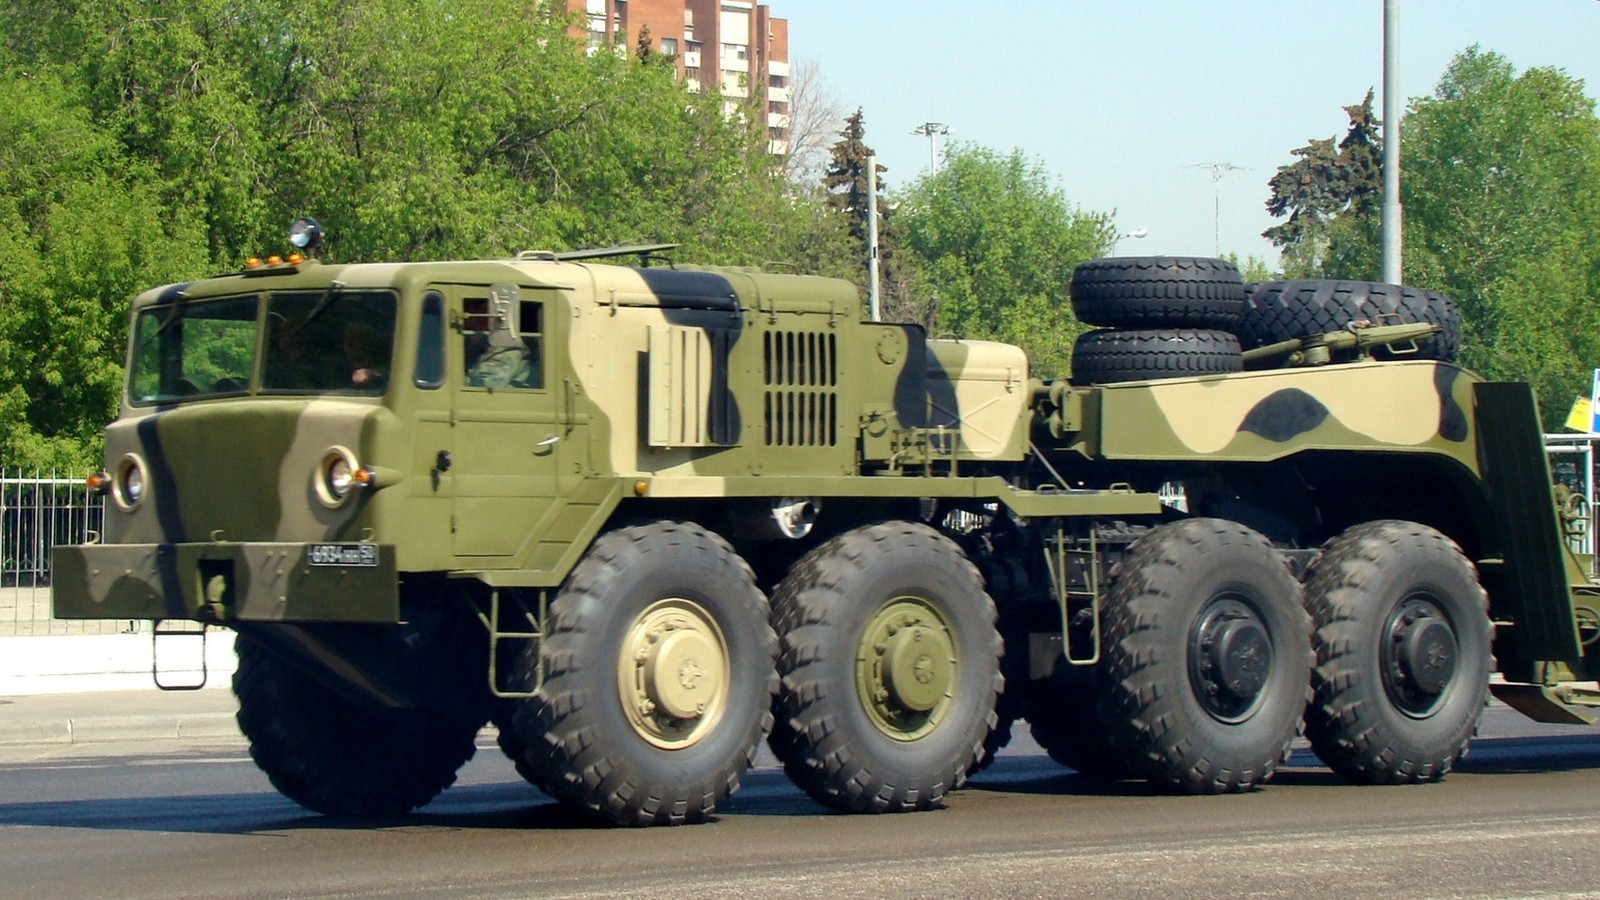 МАЗ-537Г последнего выпуска для буксировки танковых полуприцепов (фото автора)